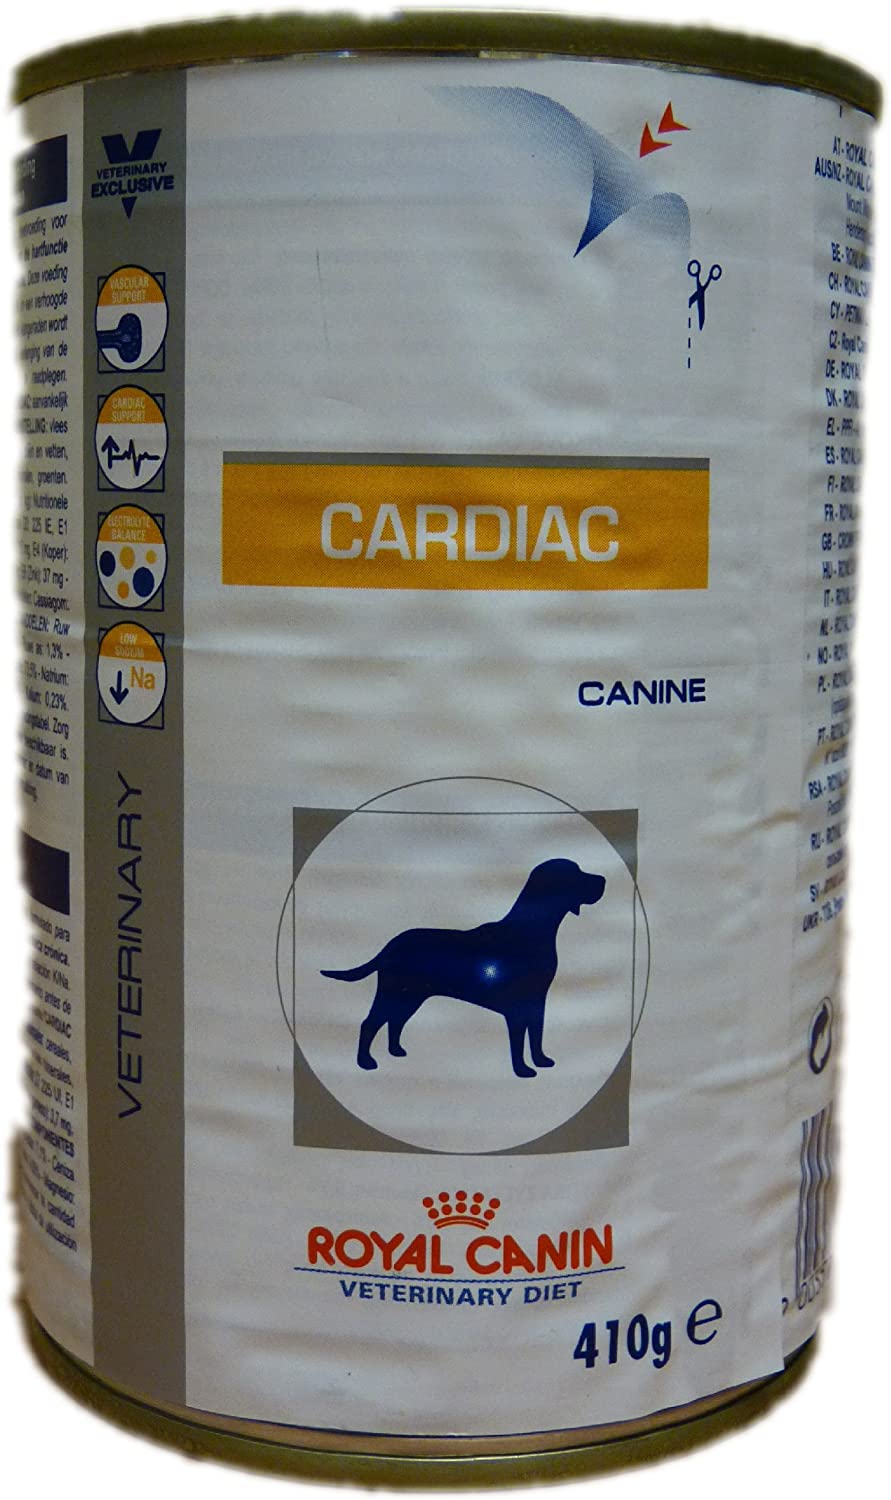  ROYAL CANIN Alimento para Perros Cardiac - 410 gr 